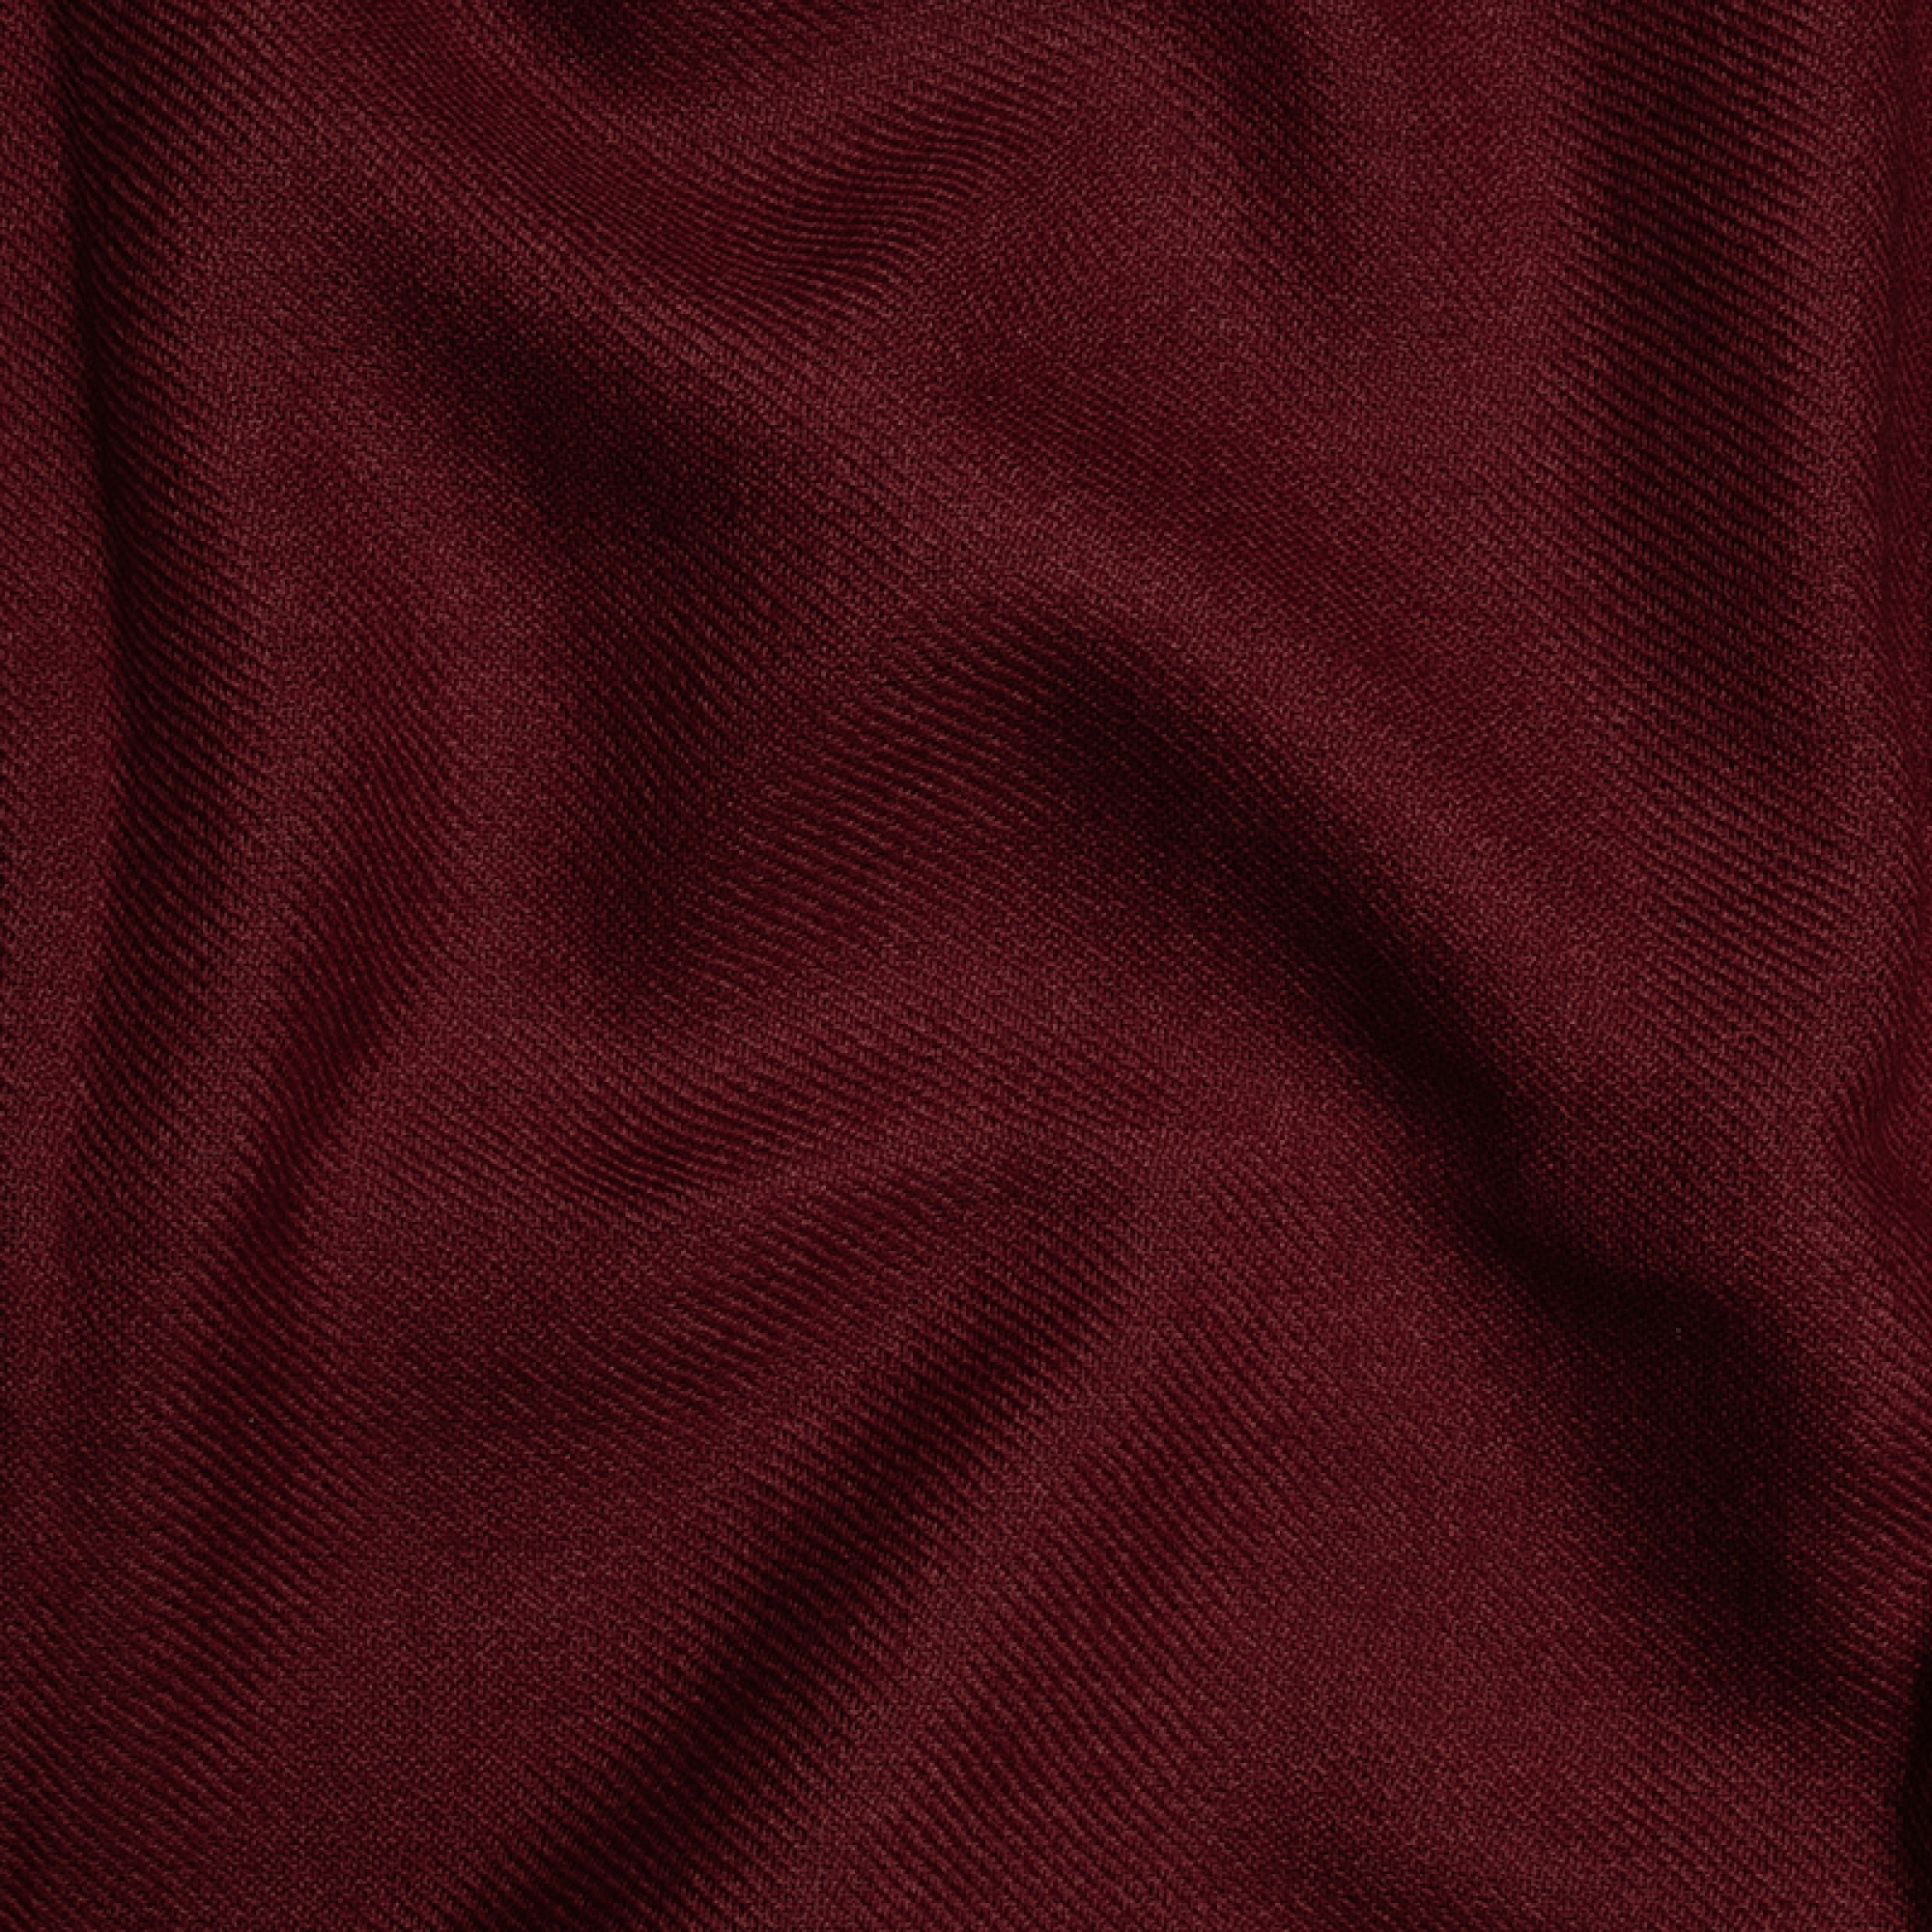 Cashmere cashmere donna toodoo plain xl 240 x 260 rosso rame profondo 240 x 260 cm